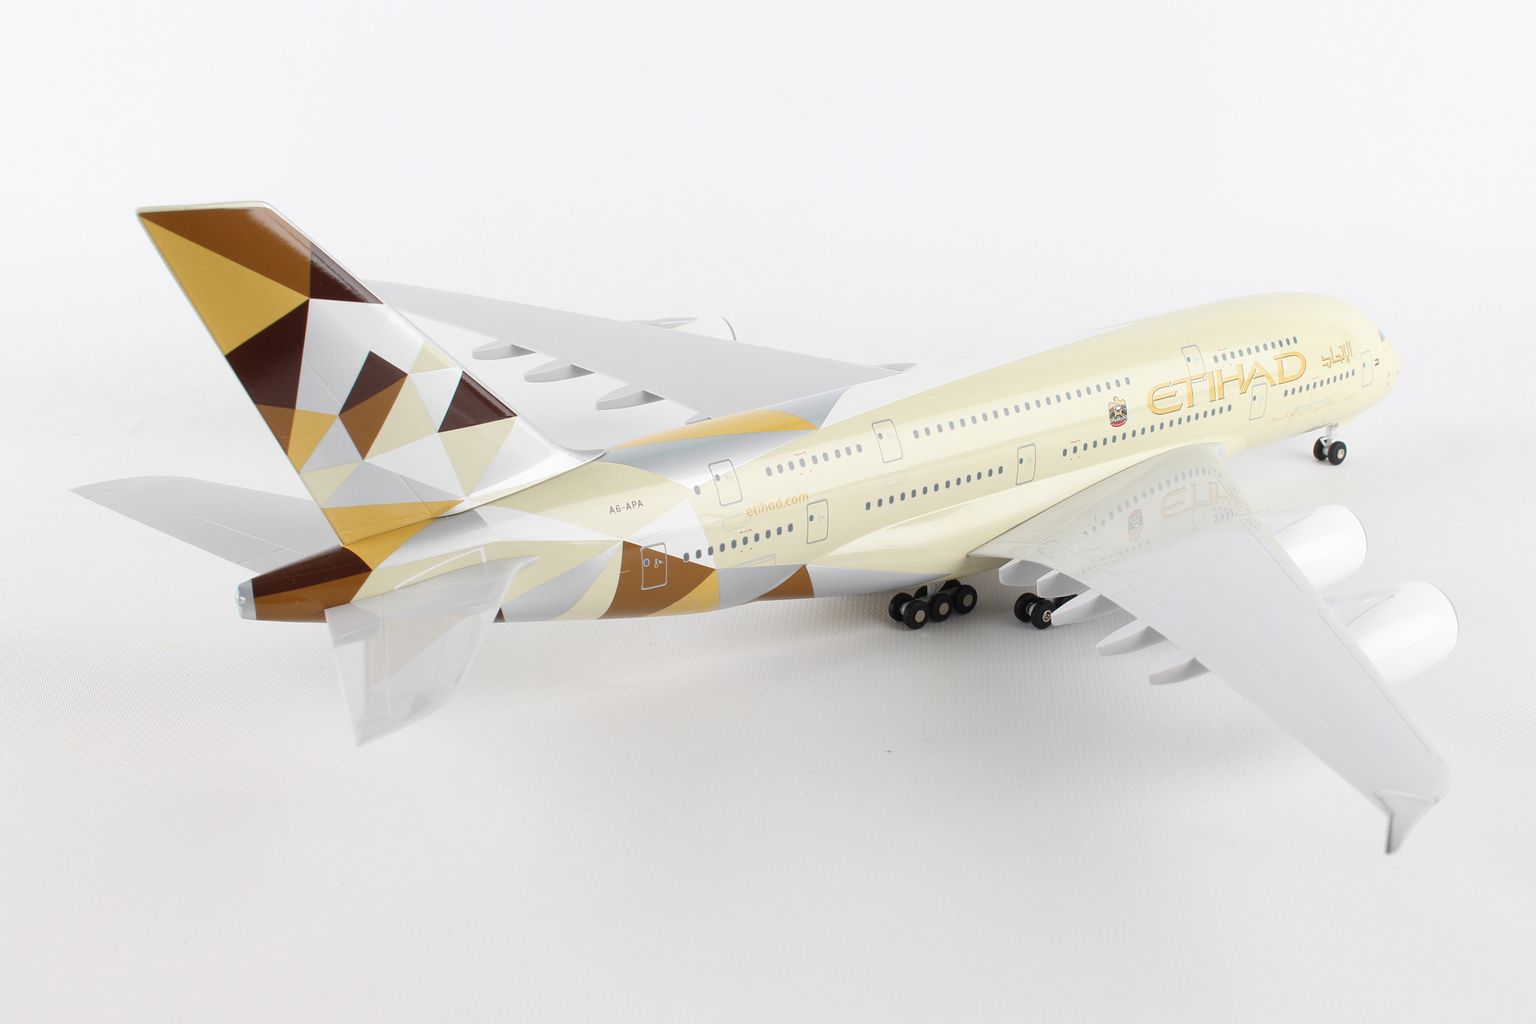 Новые модели самолетов. Аэробус а380модель ревел. Airbus a380-800 Etihad Airways. A380 Etihad 1/144. Аэробус а320 Этихад Ревелл.